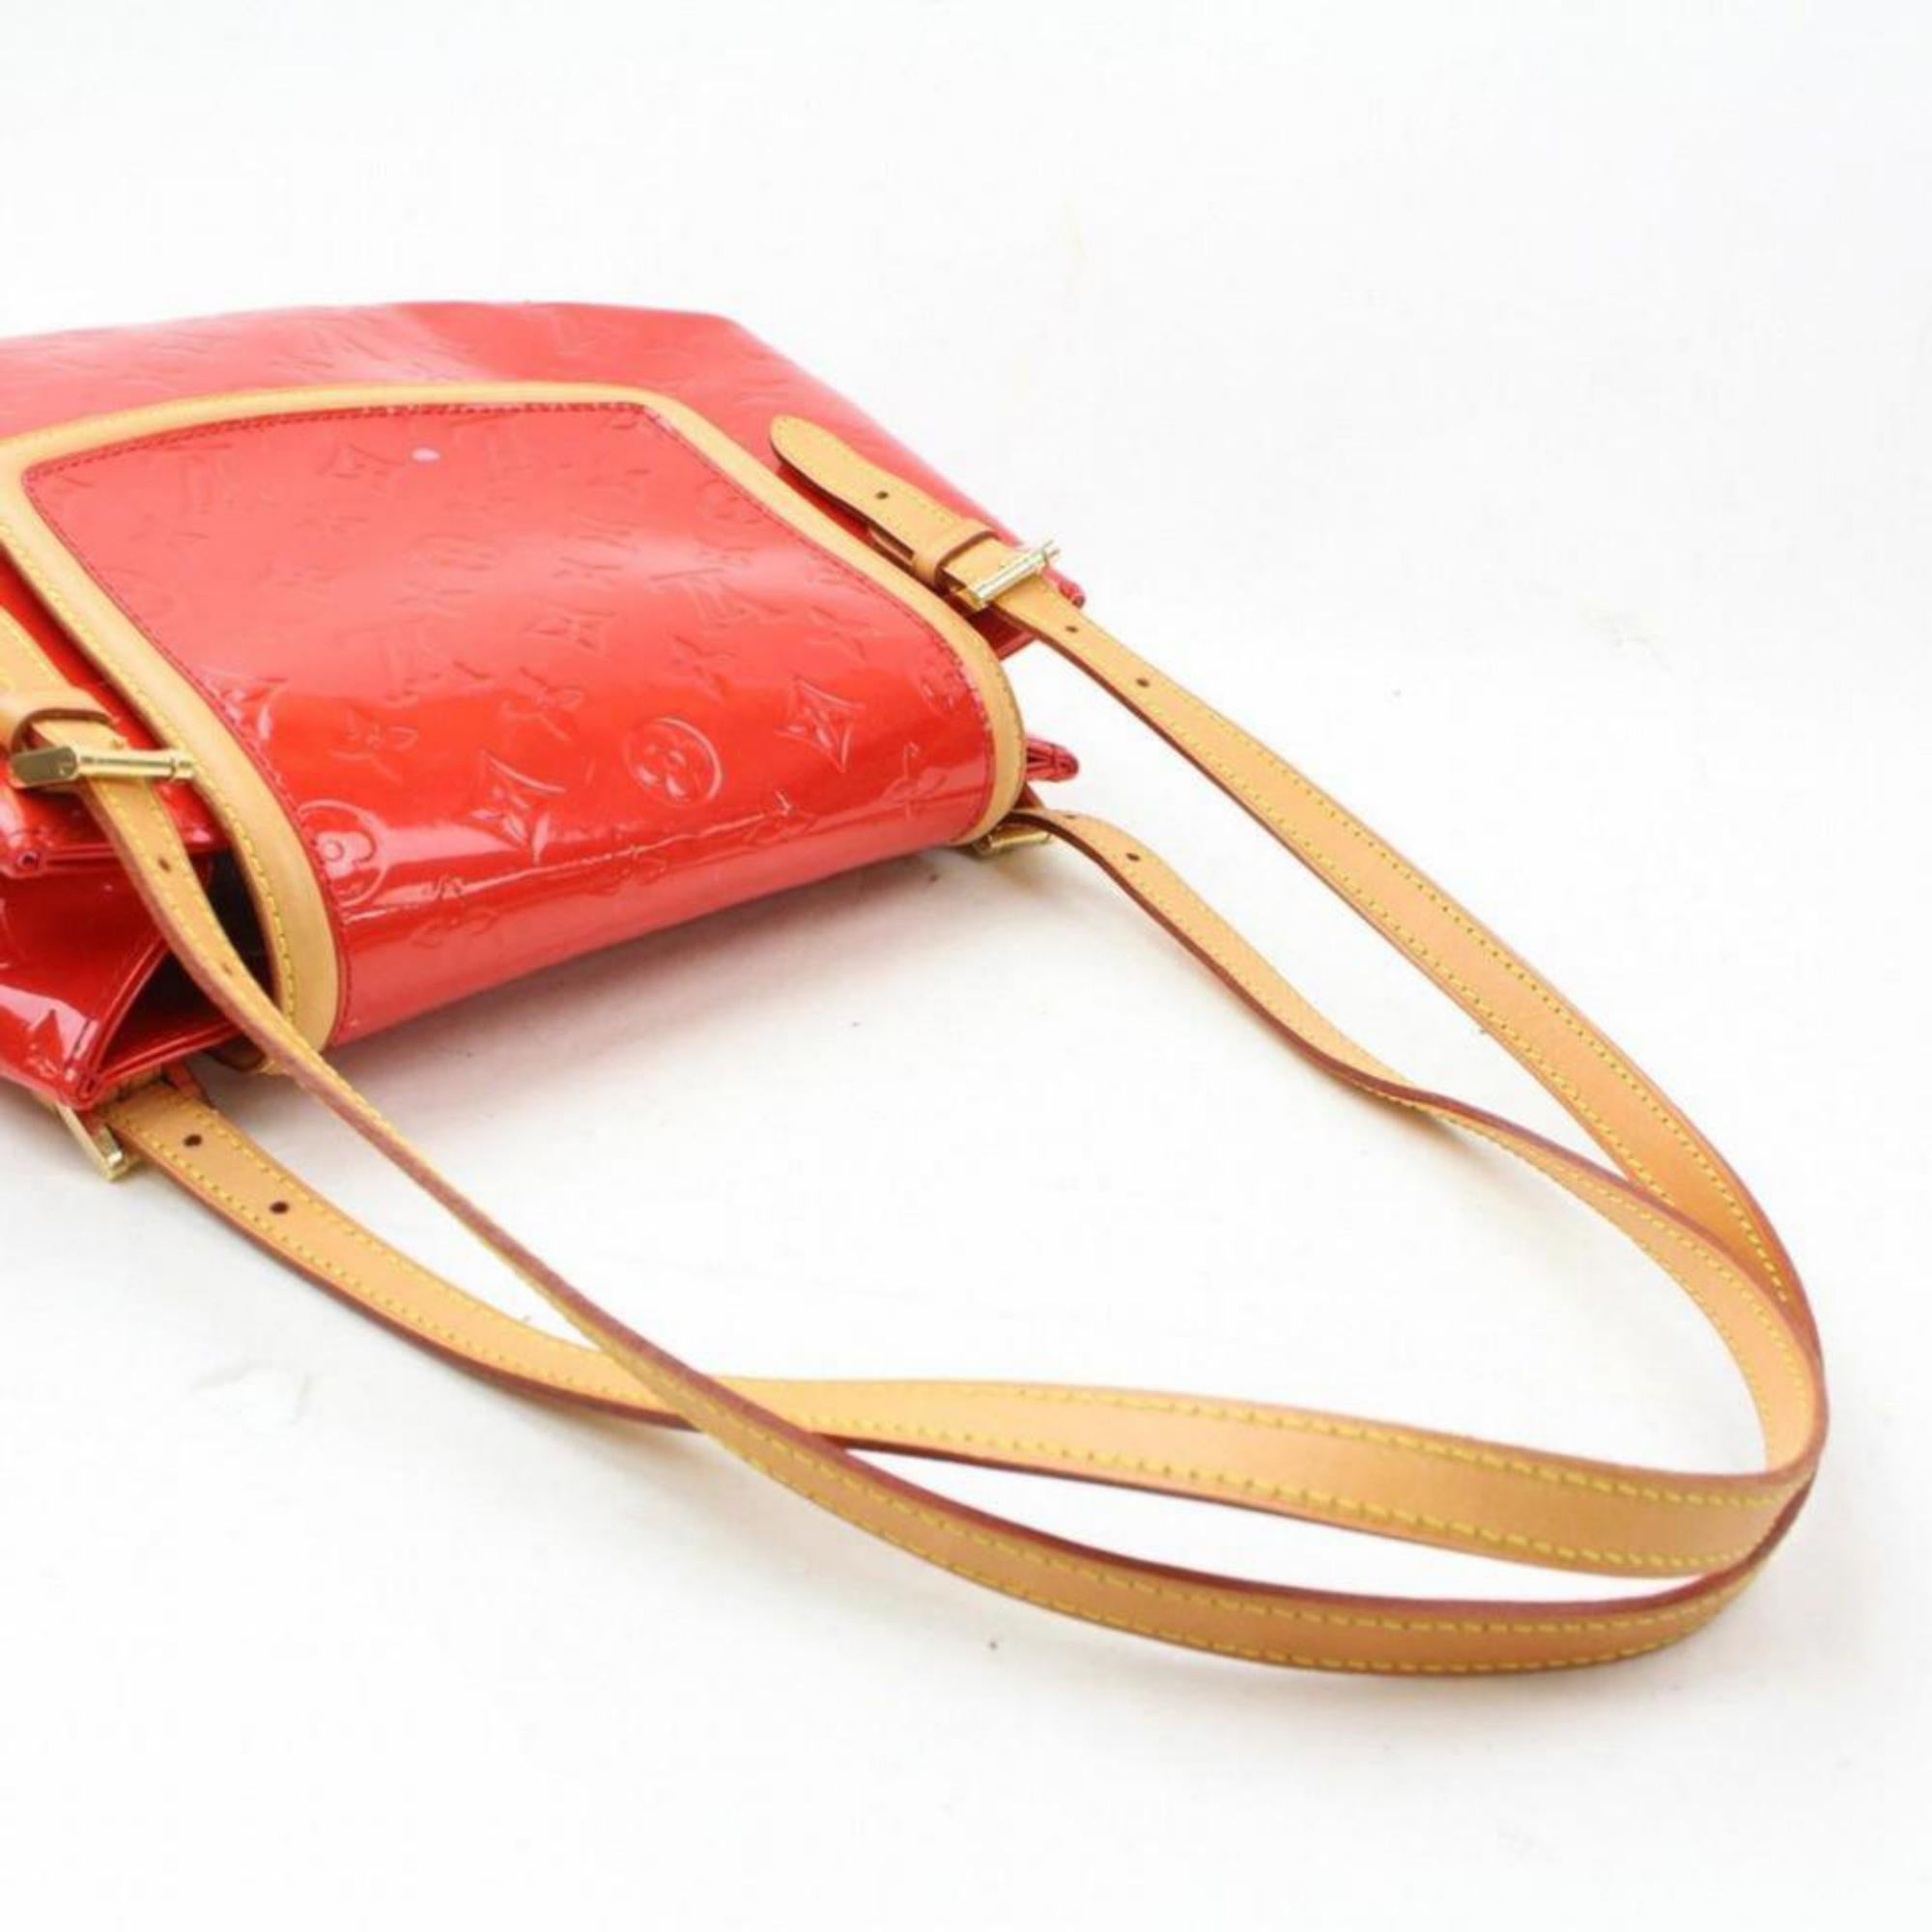 Louis Vuitton Biscayne Bay Gm 869144 Red Monogram Vernis Leather Shoulder Bag For Sale 4